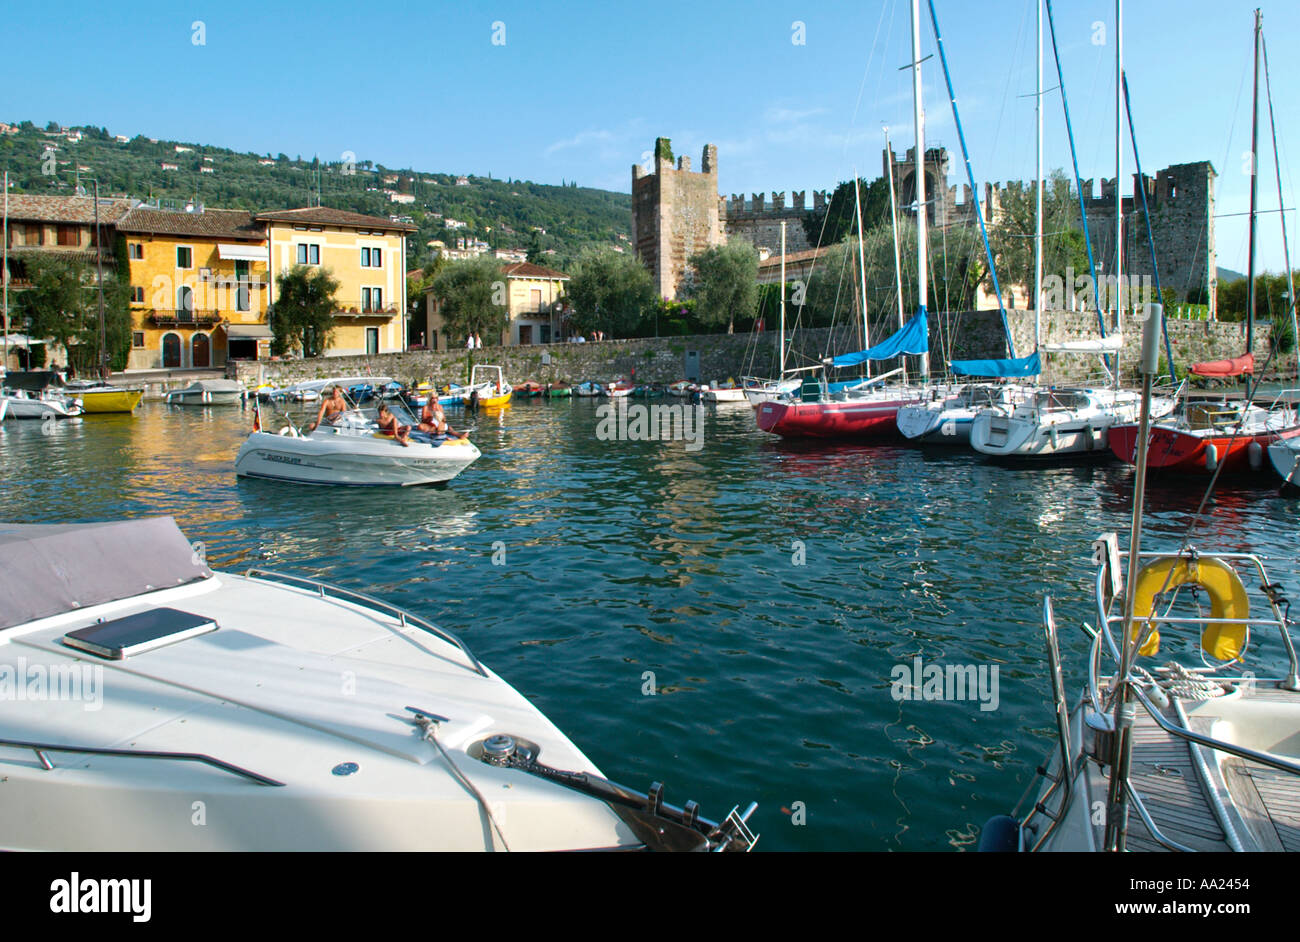 Porto e dal castello, a Torri del Benaco sul Lago di Garda, Italia Foto Stock